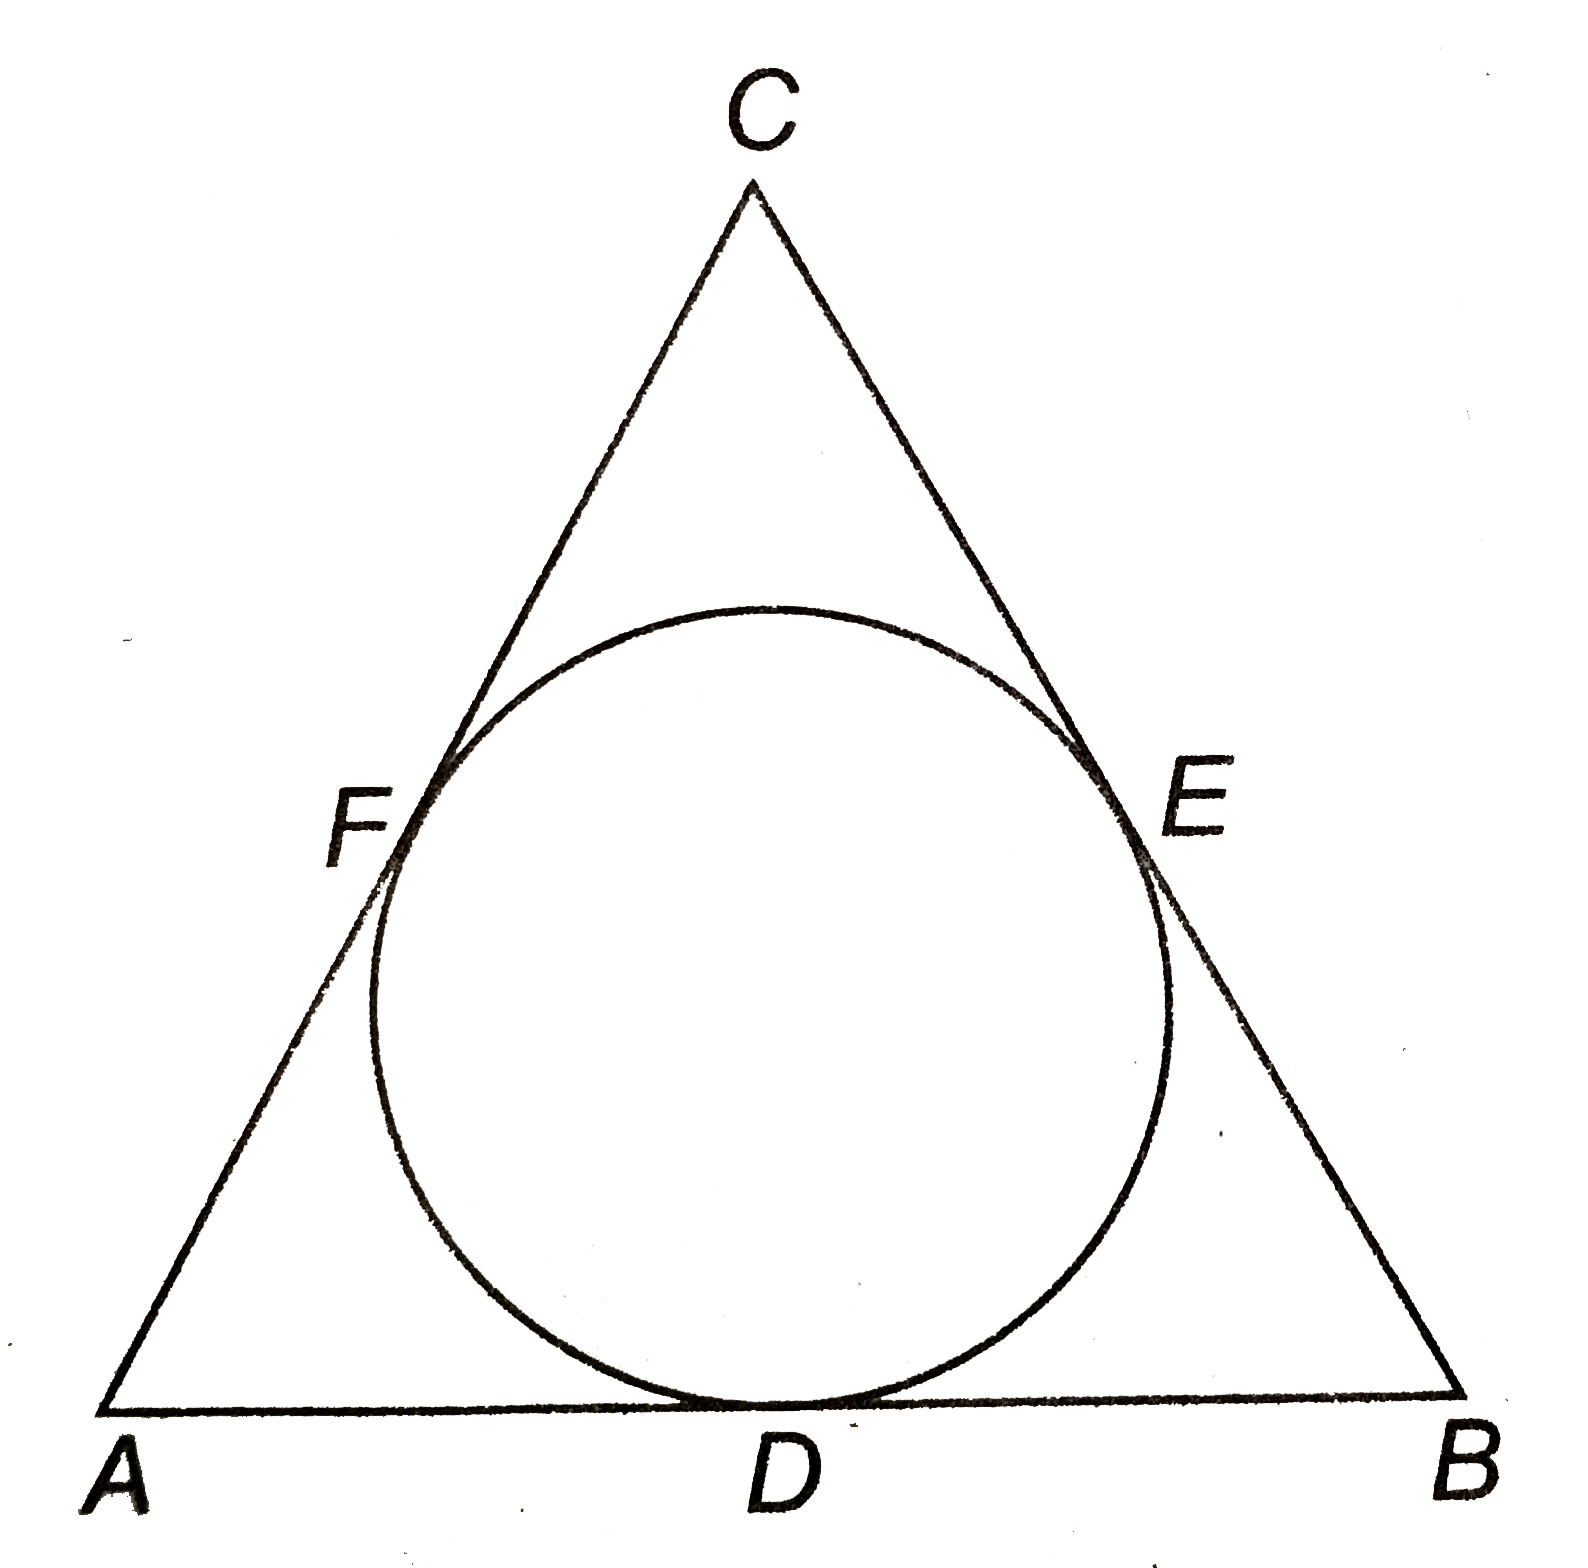 DeltaABC, जिसकी भुजाएँ 8 सेमी, 10 सेमी और 12 सेमी है, के अन्तर्गत एक वृत्त चित्रनुसार बनाया गया है। AD, BE और CF ज्ञात कीजिए।